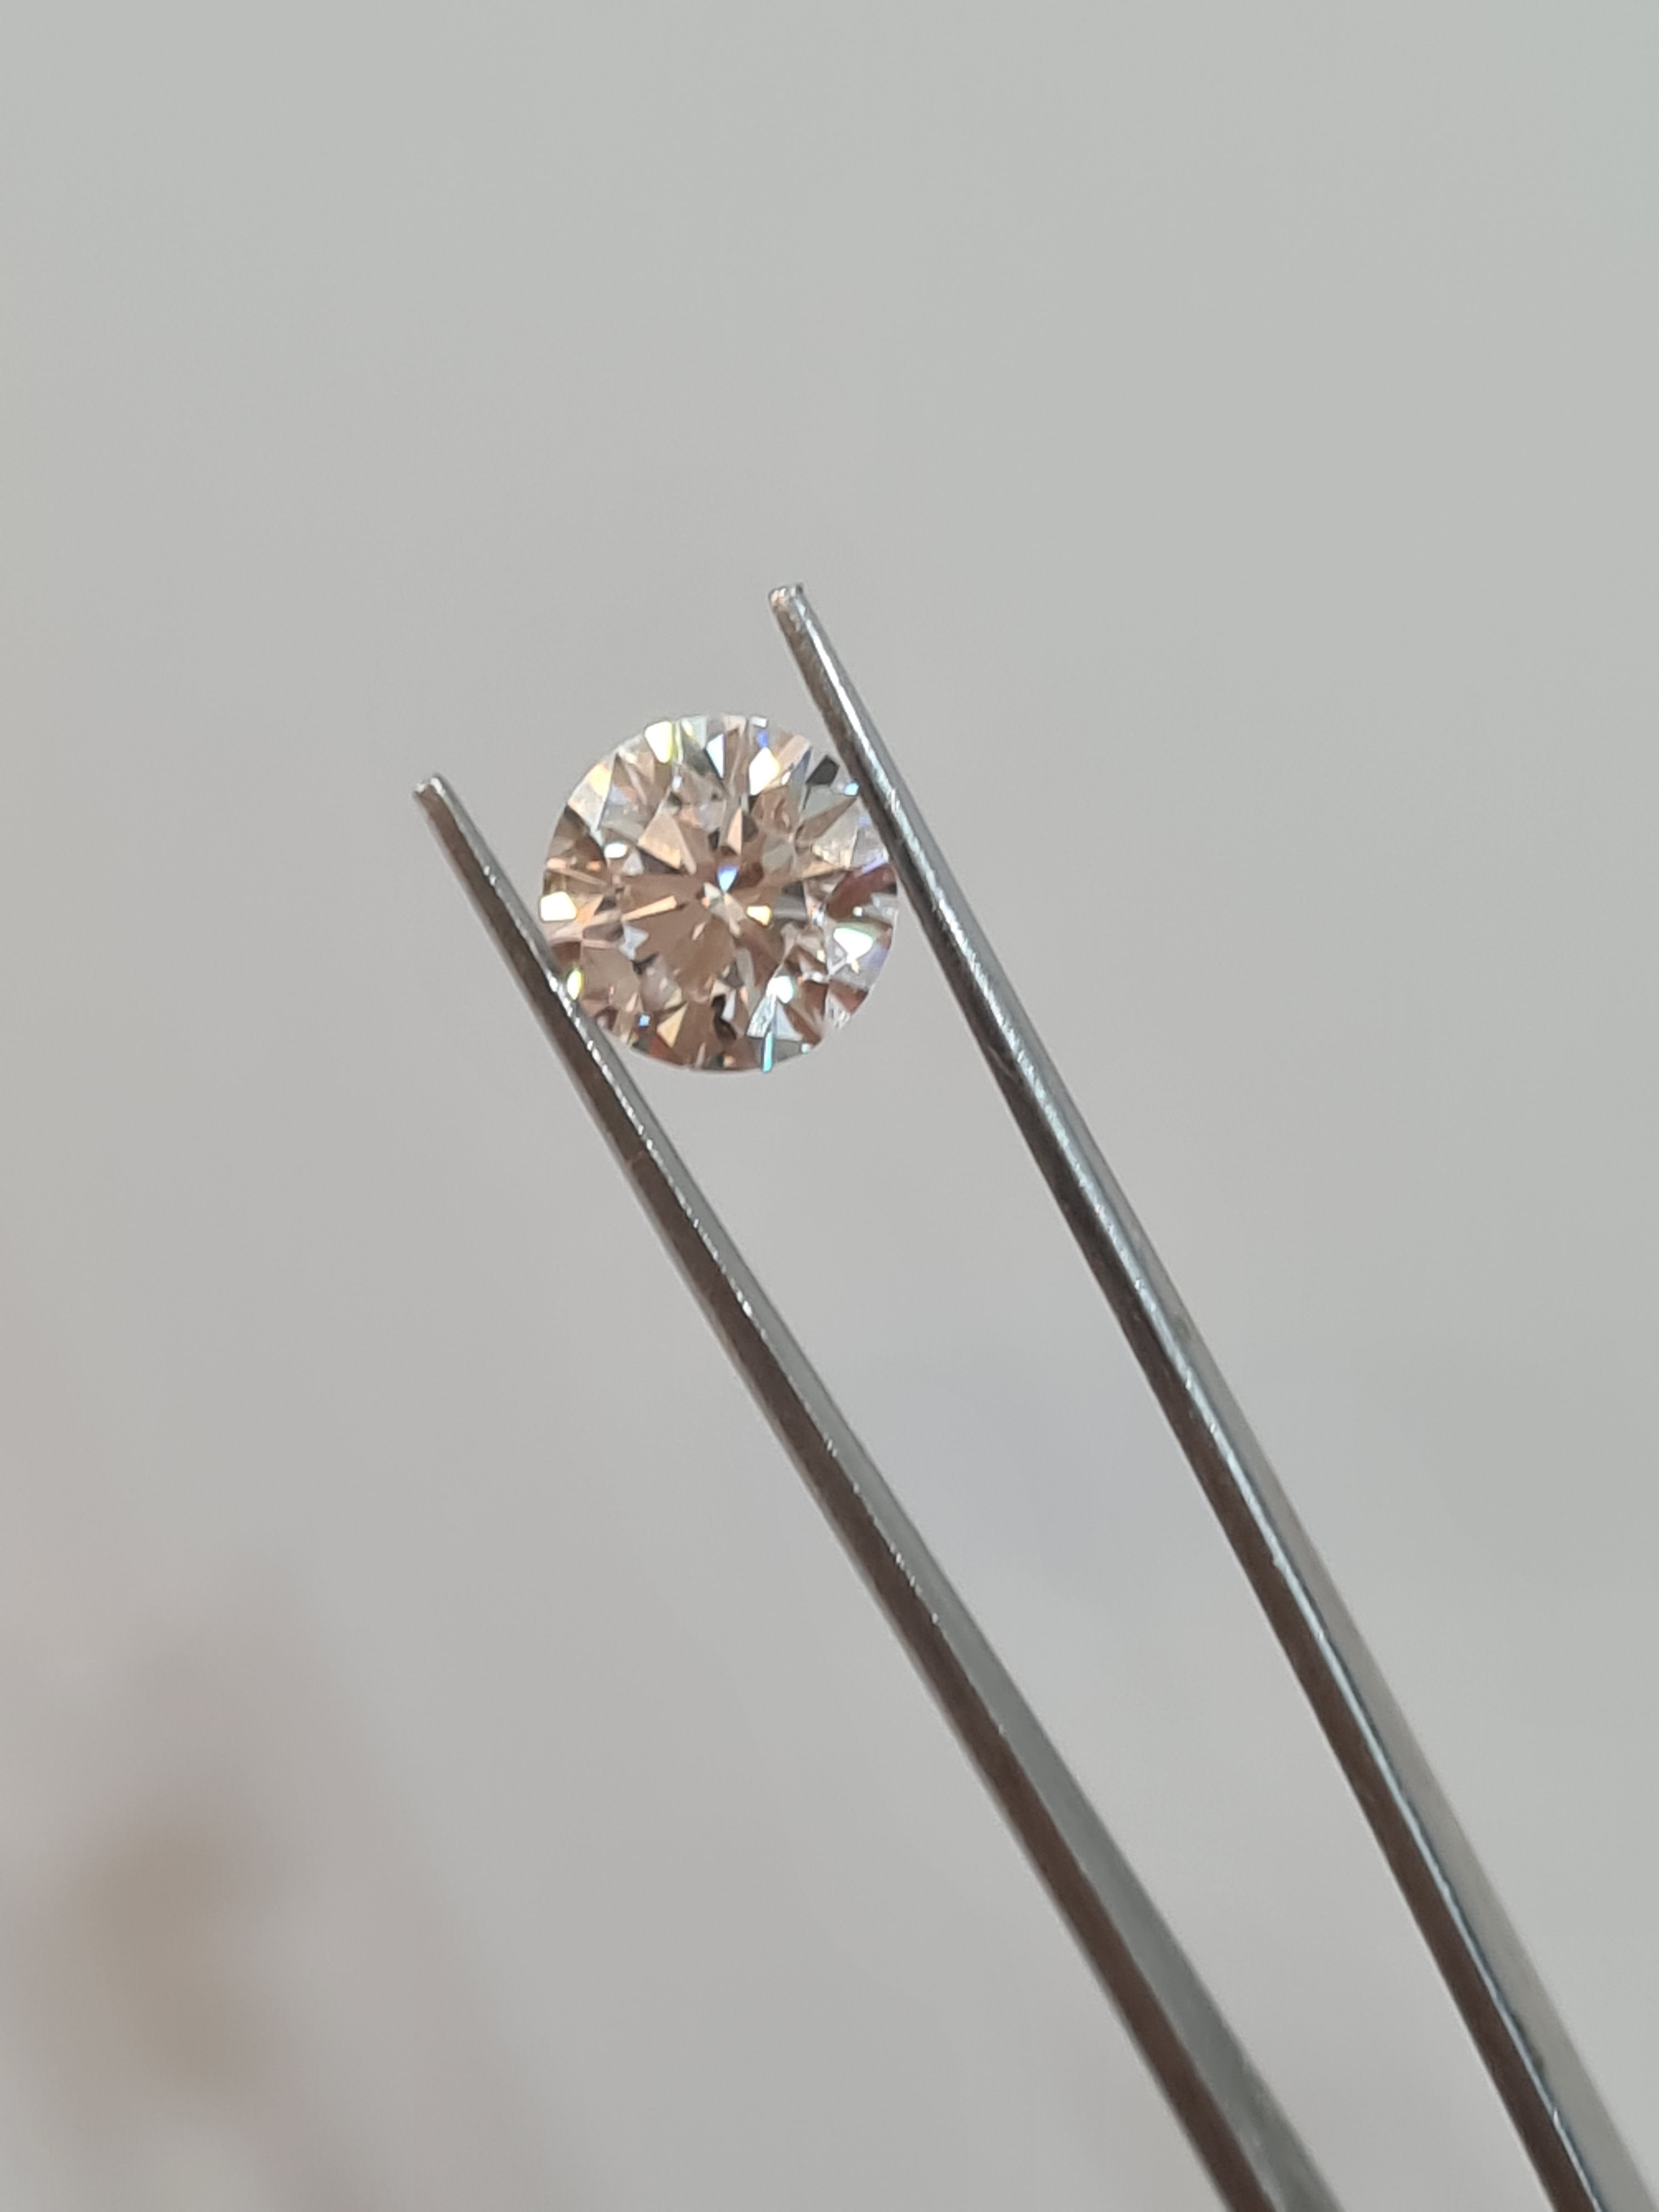 1.50 carats Kimber Diamond